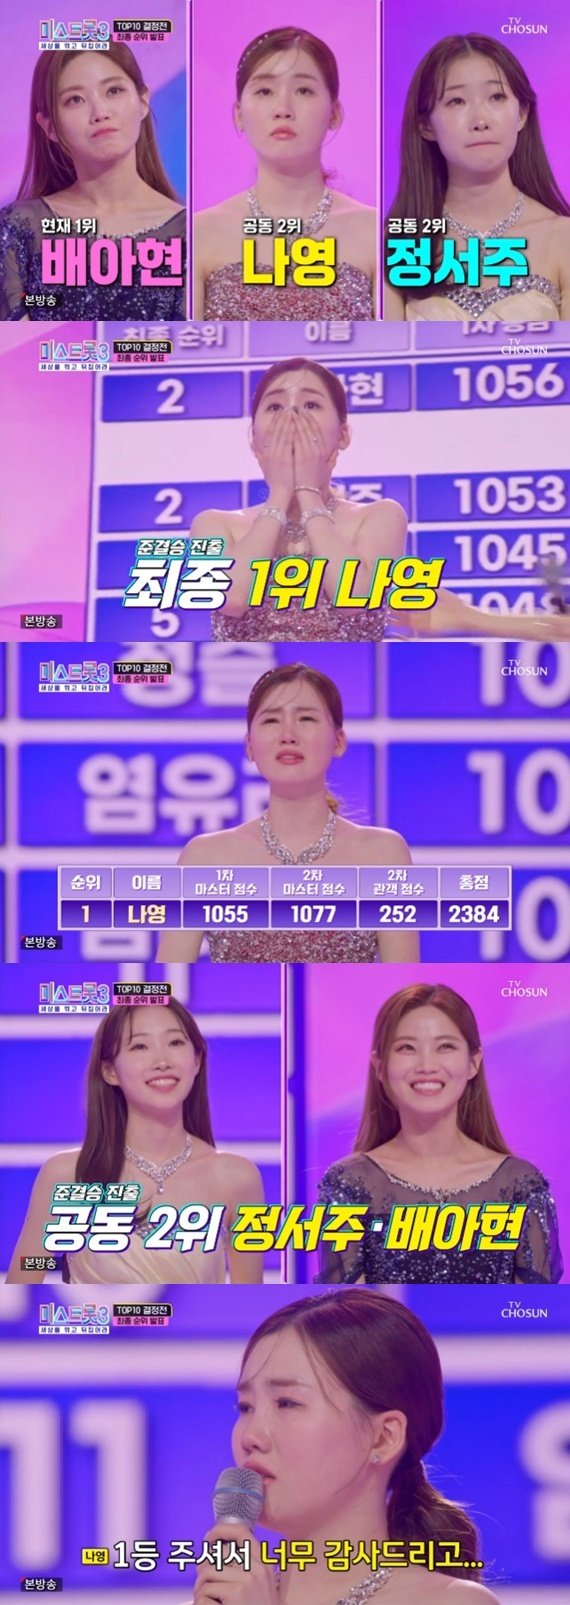 나영, 1위로 '미스트롯3' 준결승 진출…배아현·정서주, 공동 2위 [RE:TV]